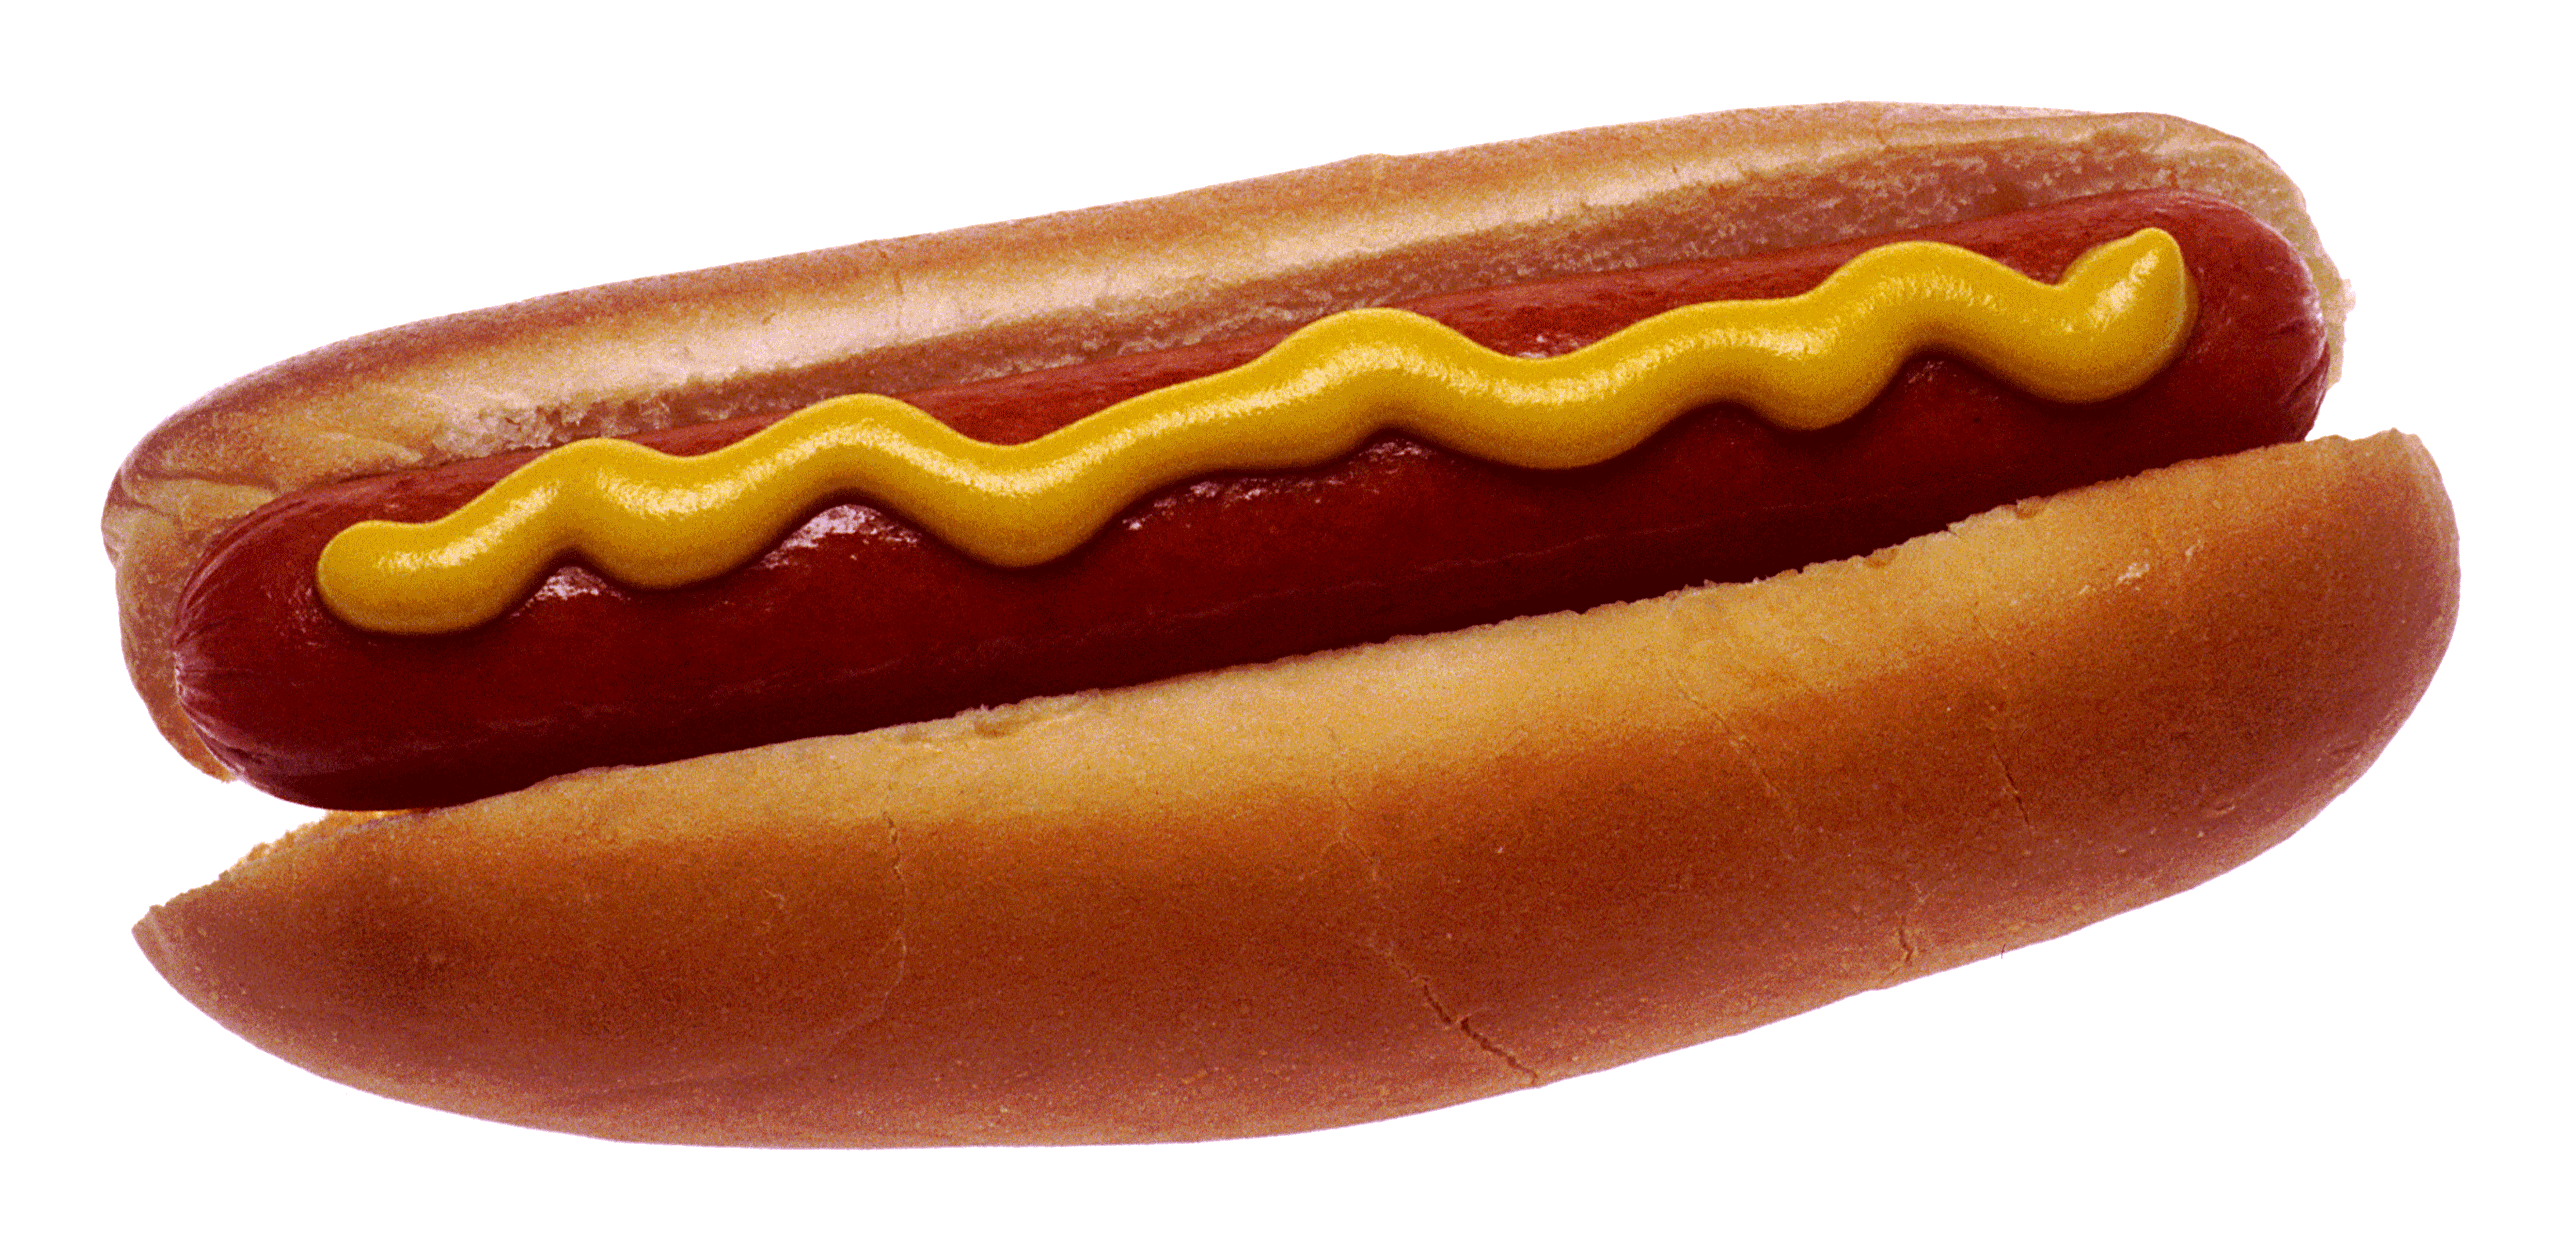 Images Of Hot Dogs - KibrisPDR